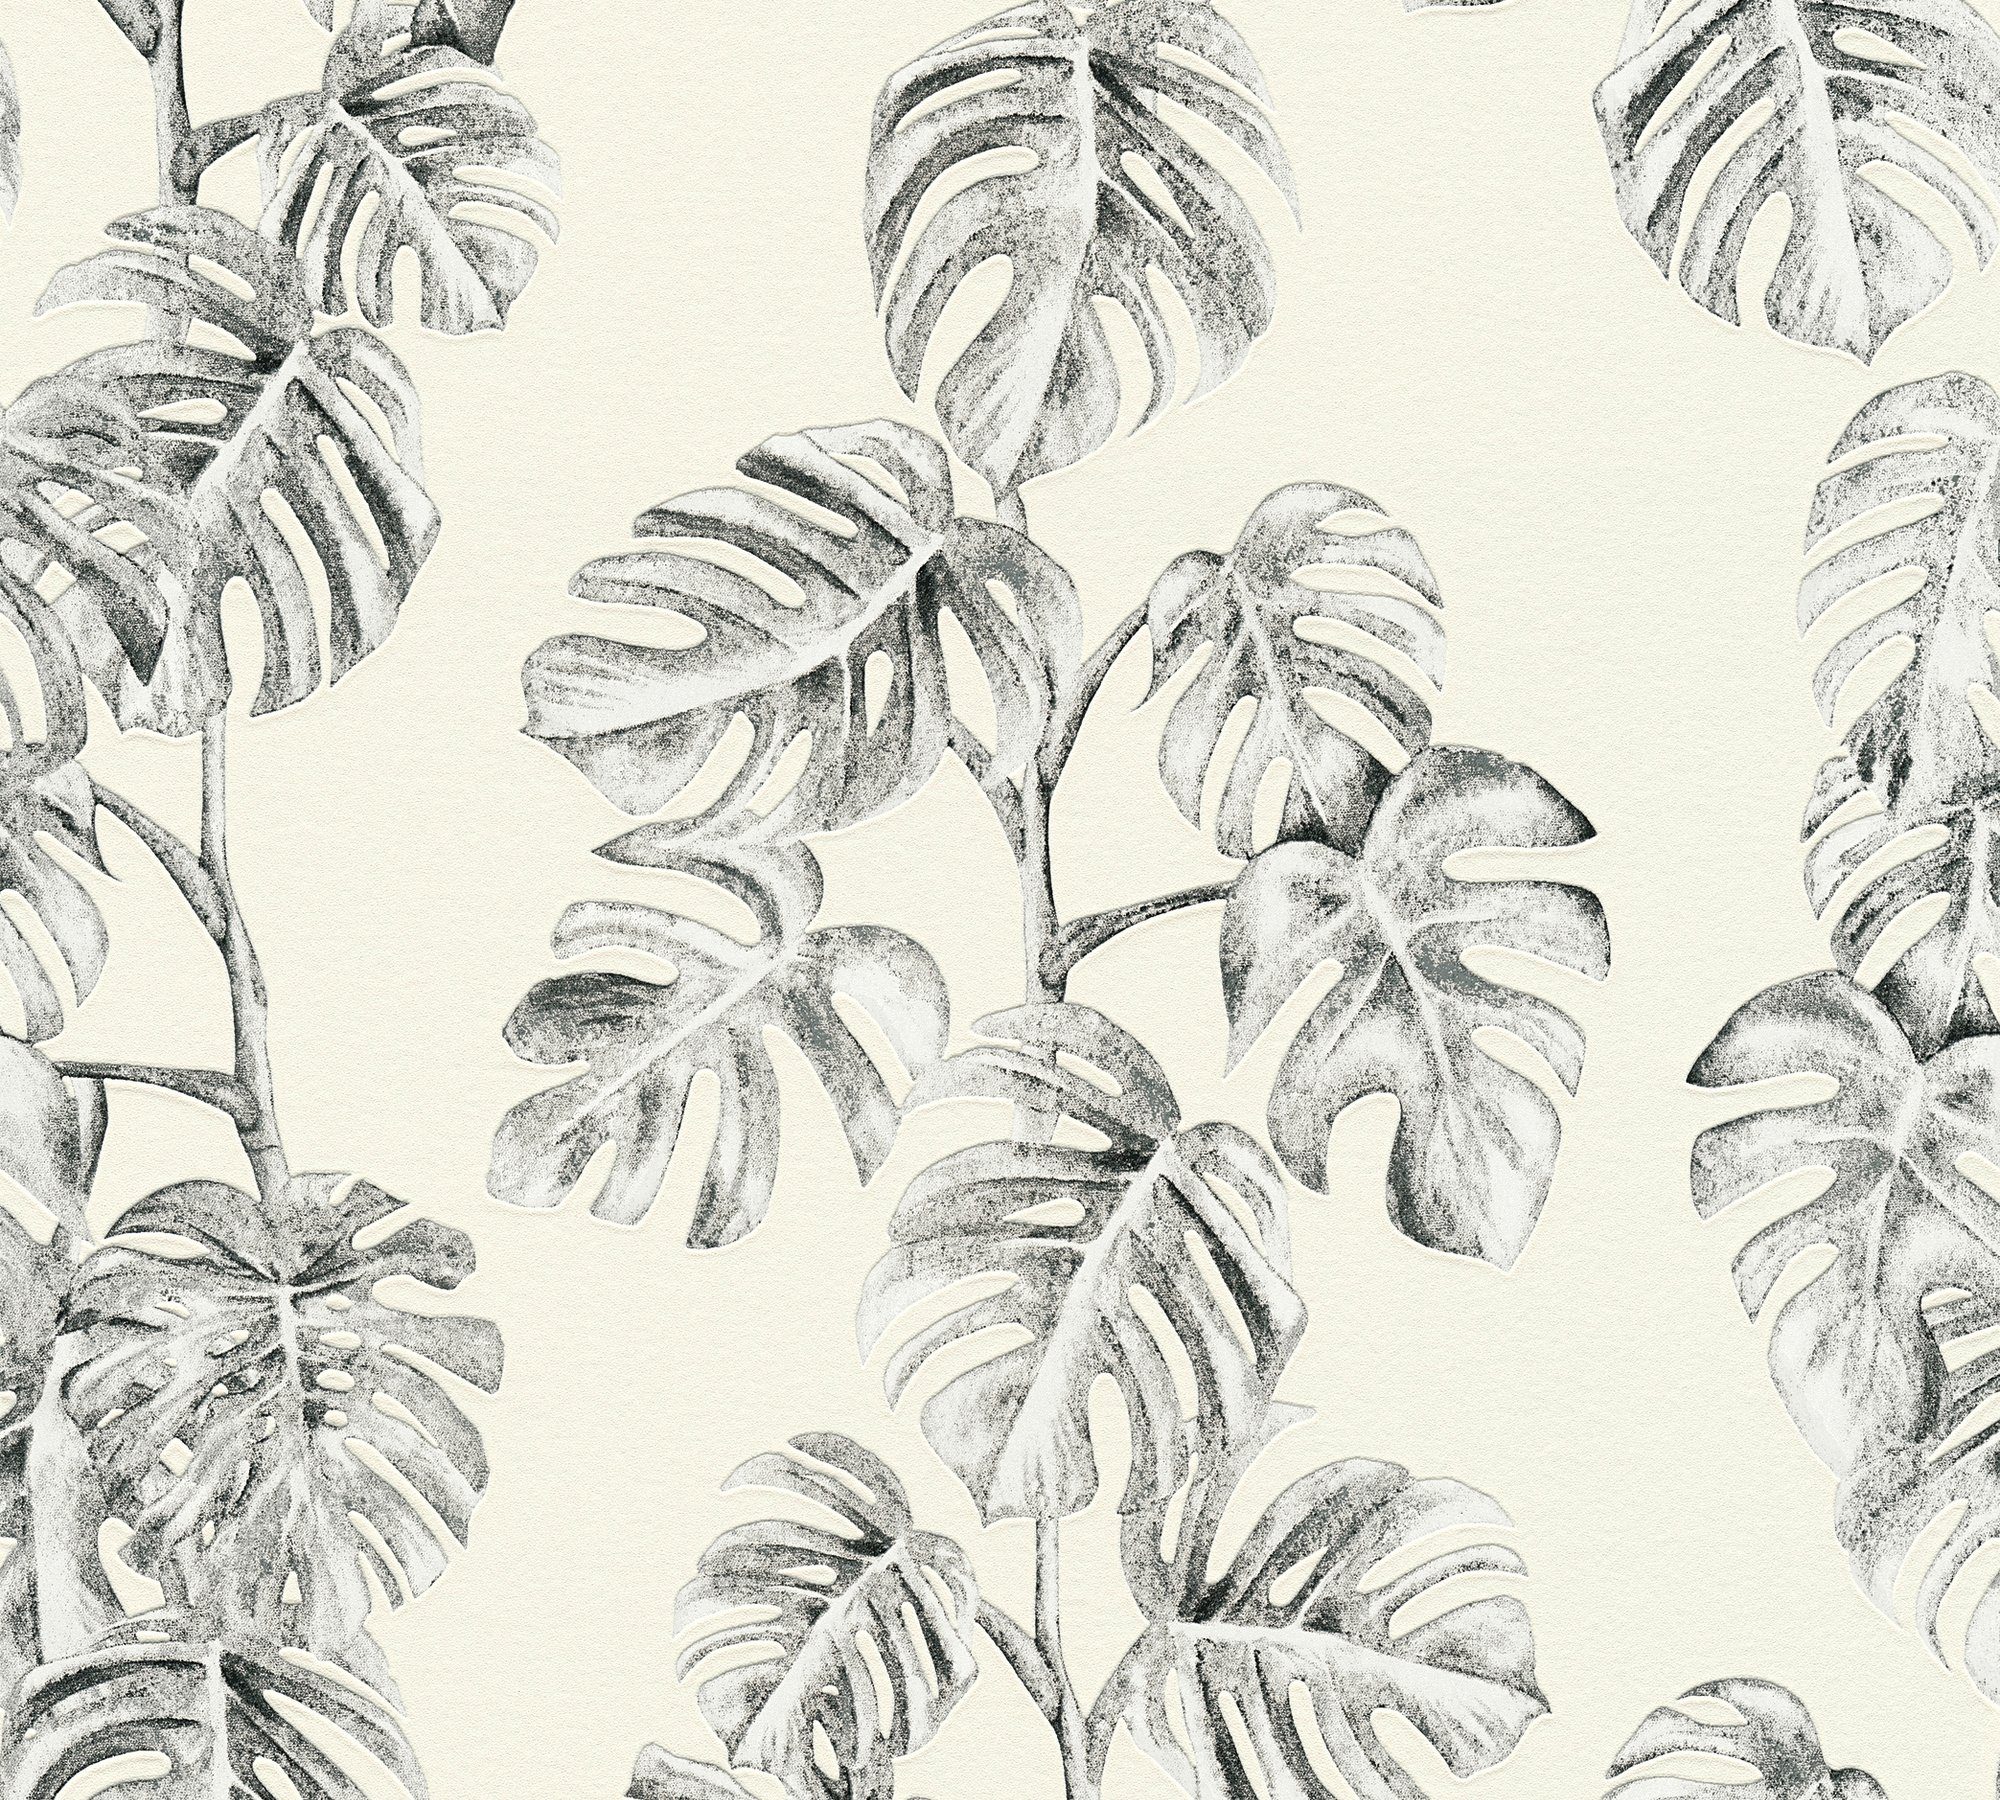 Dschungel Optik, A.S. Palmenprint Palmentapete Dschungel weiß/grau mit Création Tapete Greenery in floral, Vliestapete strukturiert,